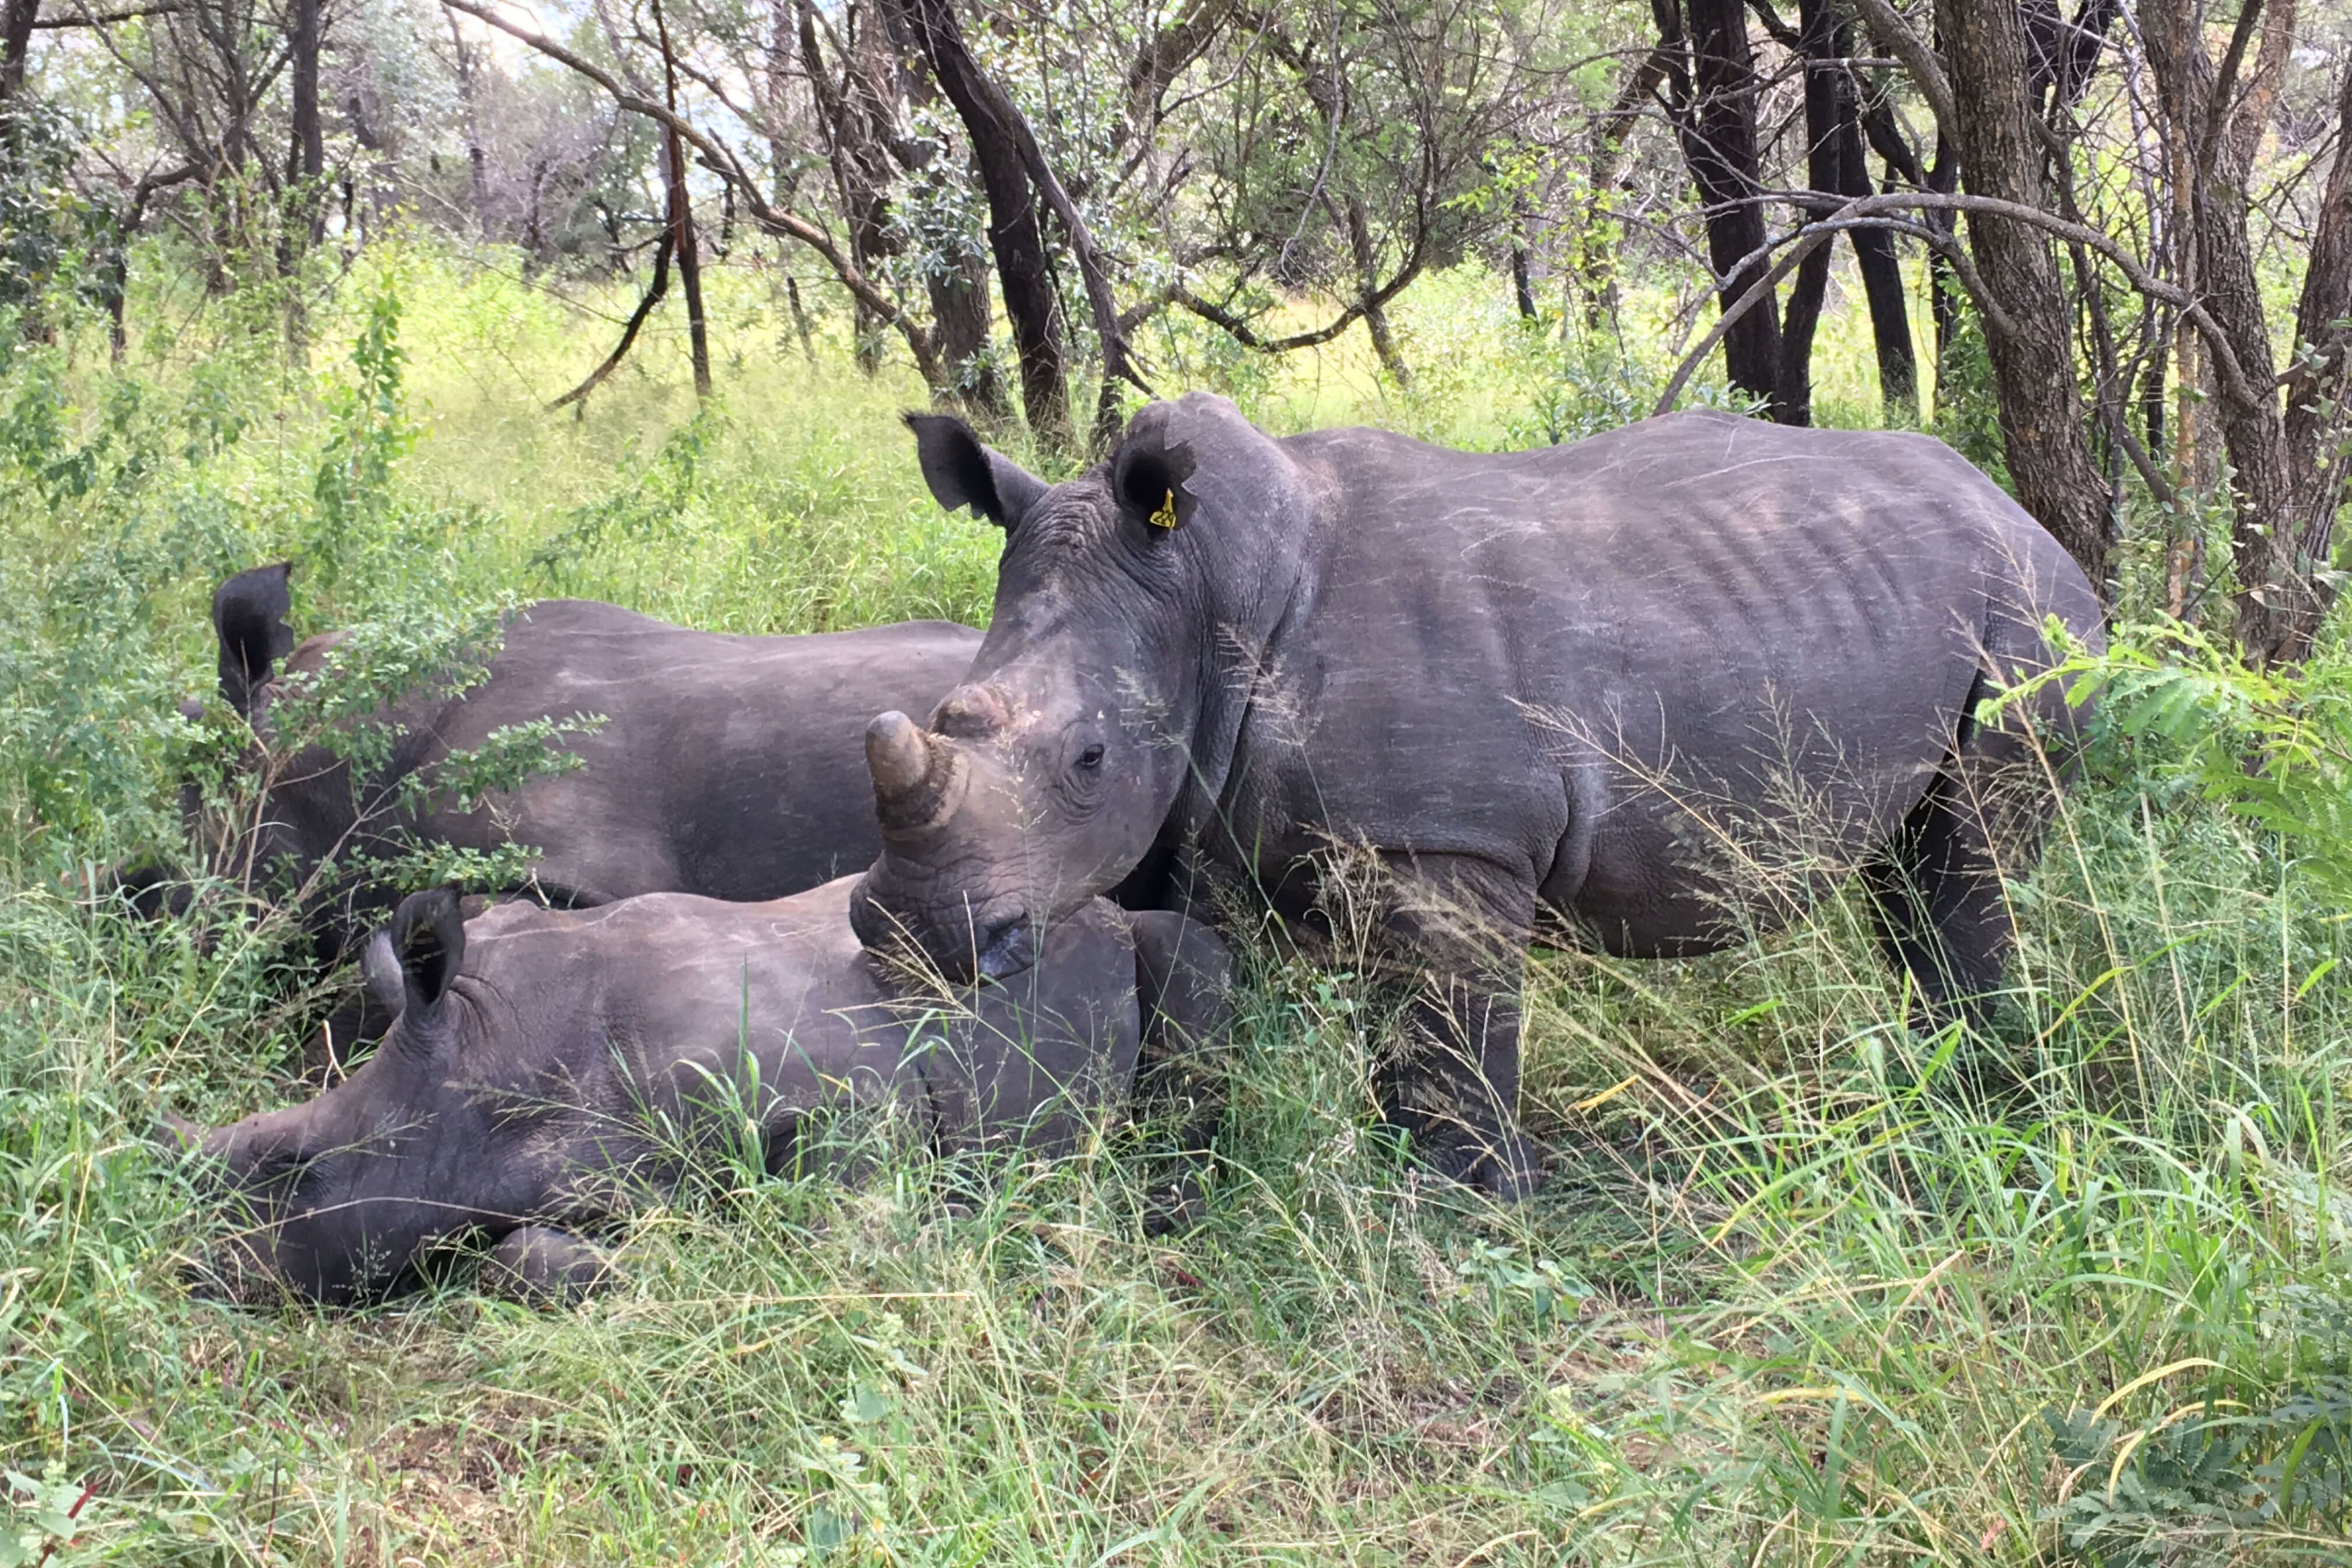 Rhinos in the Matobo National Park, Zimbabwe